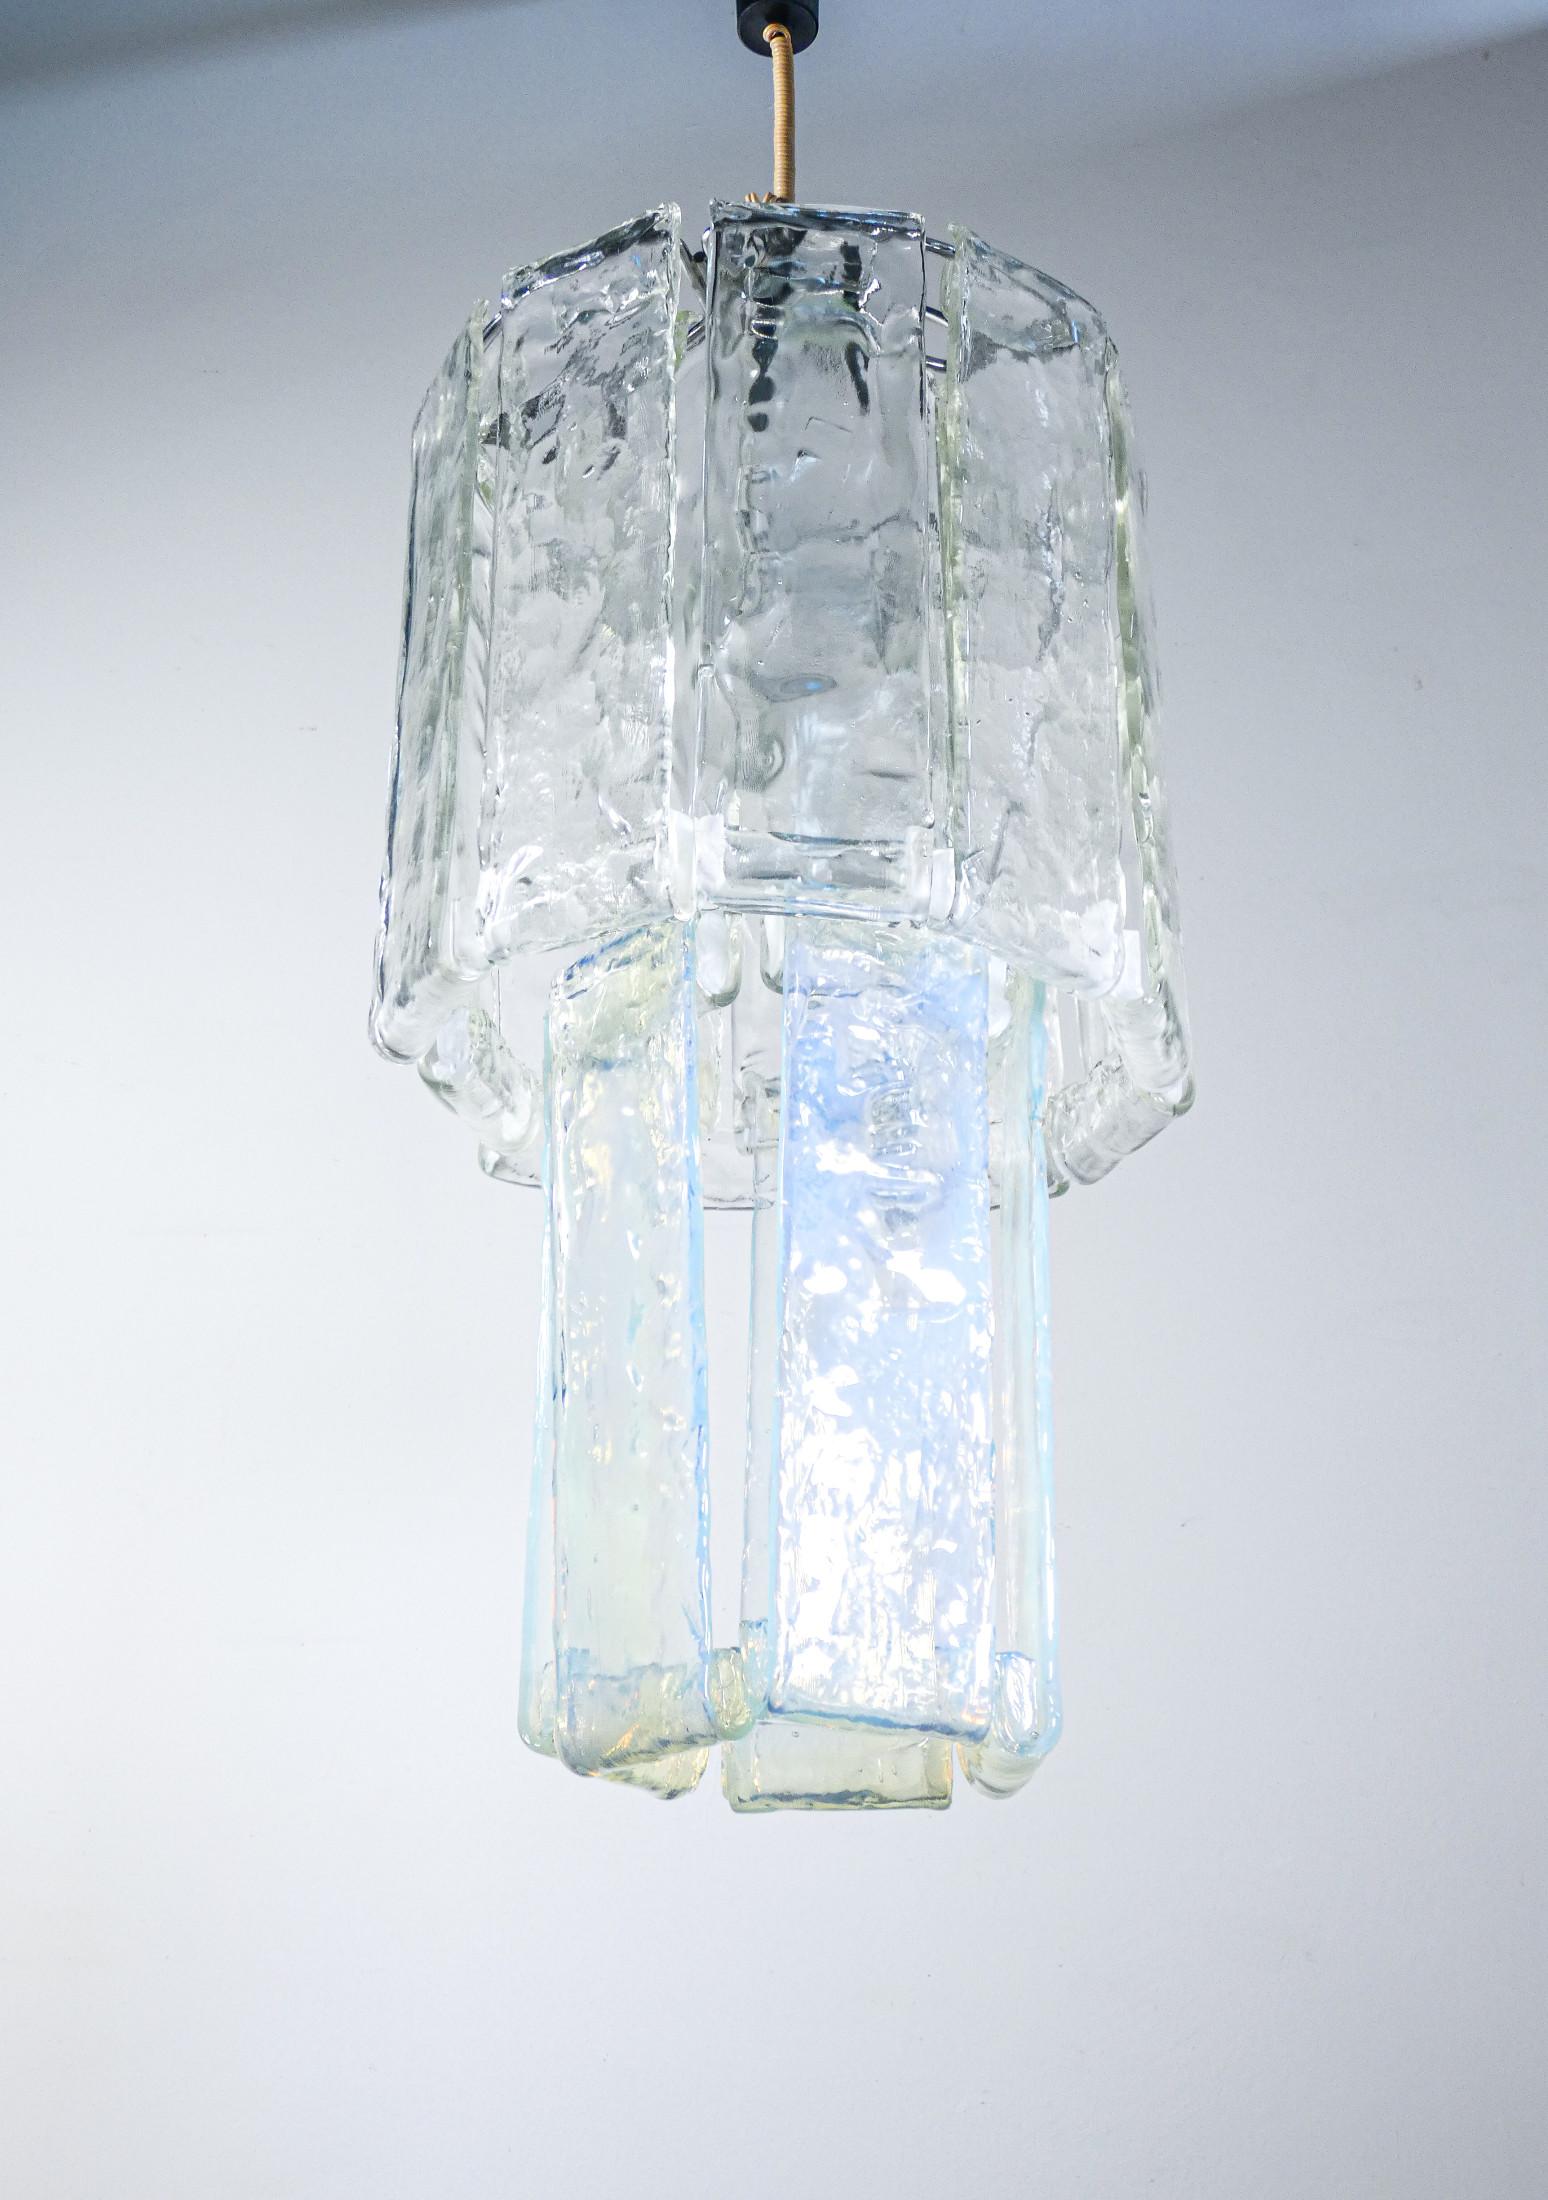 Lustre
conception F.lli TOSO,
avec éléments de diffusion
armoires en verre
soufflé en deux couleurs.

ORIGINE
Murano, Italie

PÉRIODE
1970 ca.

CONCEPTEUR
F.lli TOSO

MATÉRIAUX
Cadre en métal, éléments diffuseurs en verre soufflé en deux couleurs :